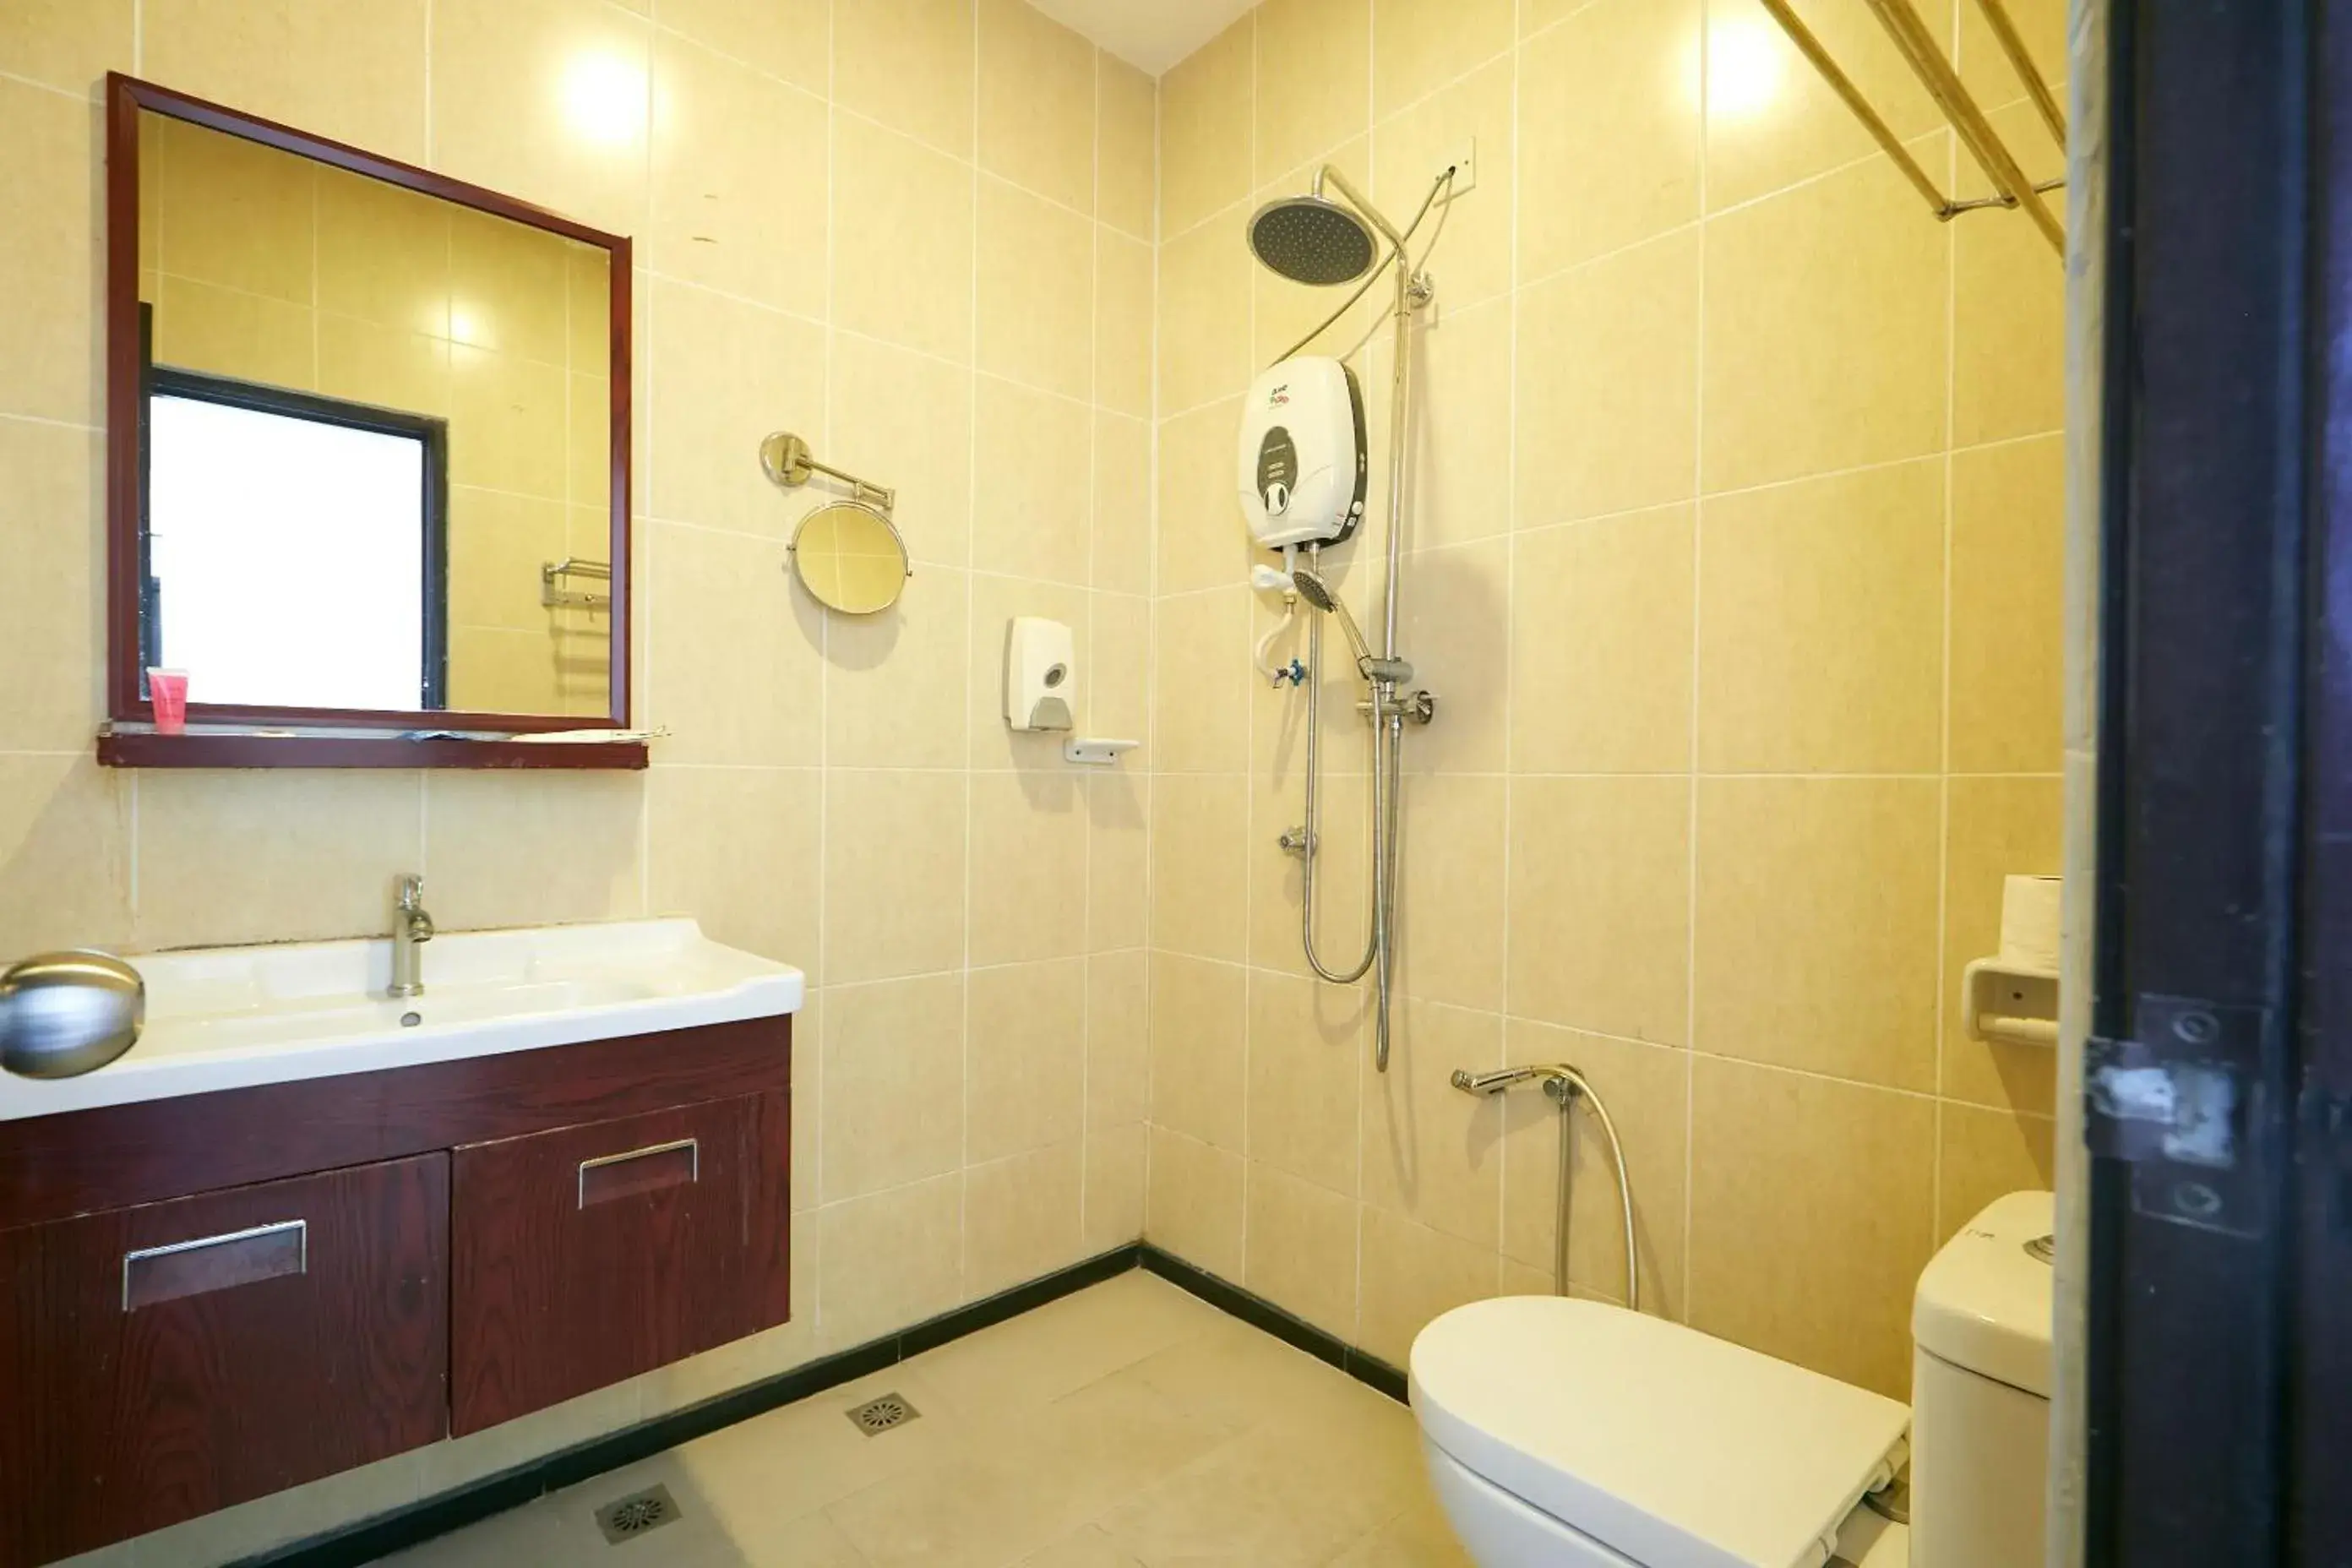 Shower, Bathroom in Club Dolphin Hotel